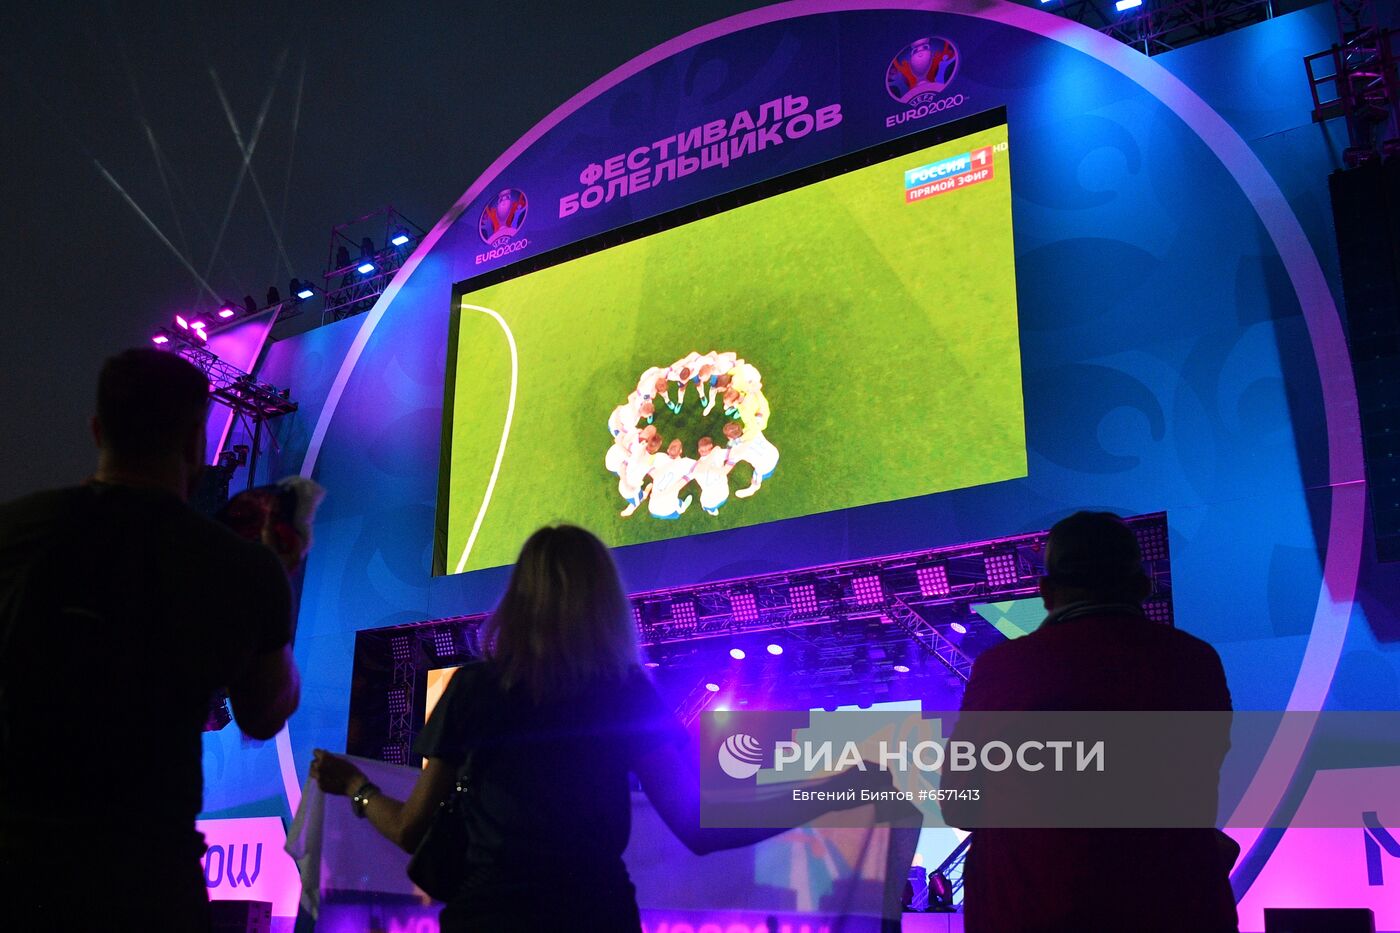 Просмотр матча ЧЕ-2020 по футболу между сборными Бельгии и России